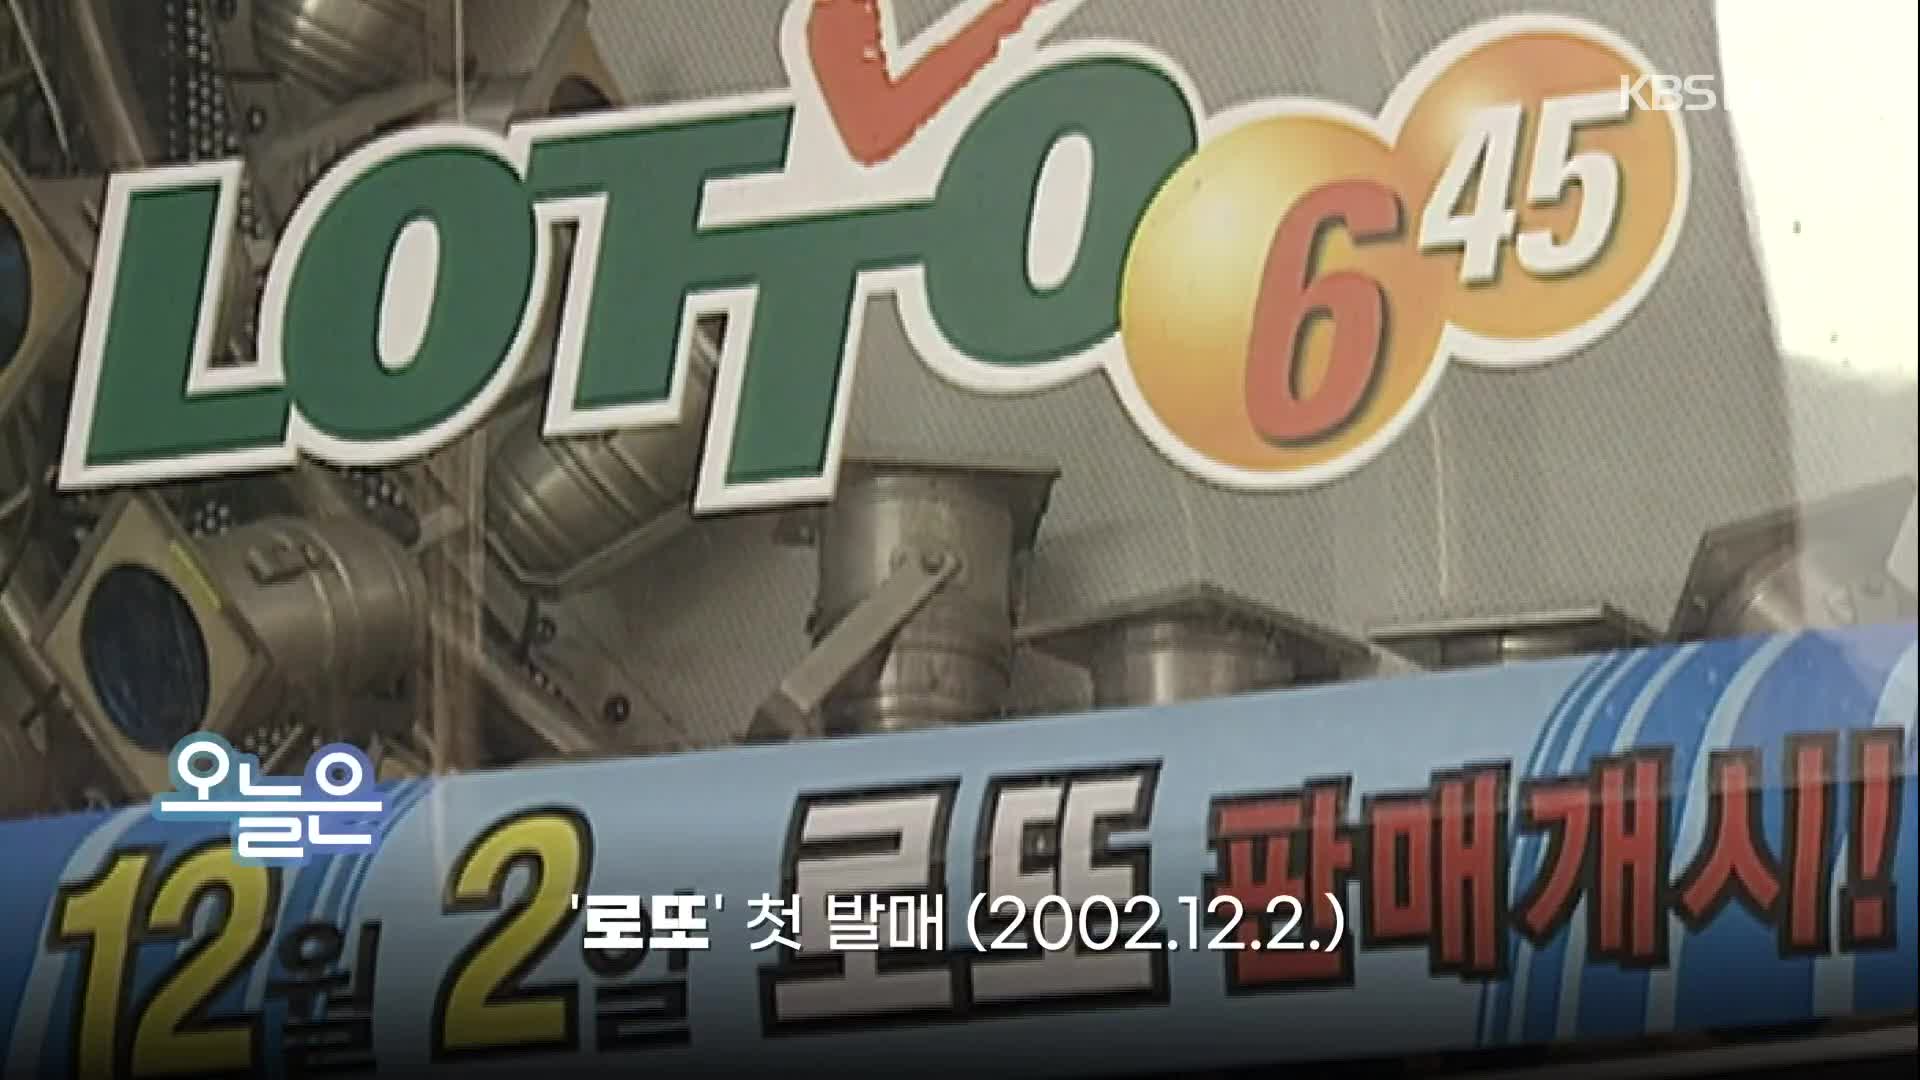 [오늘은] ‘로또’ 첫 발매 (2002.12.2.)